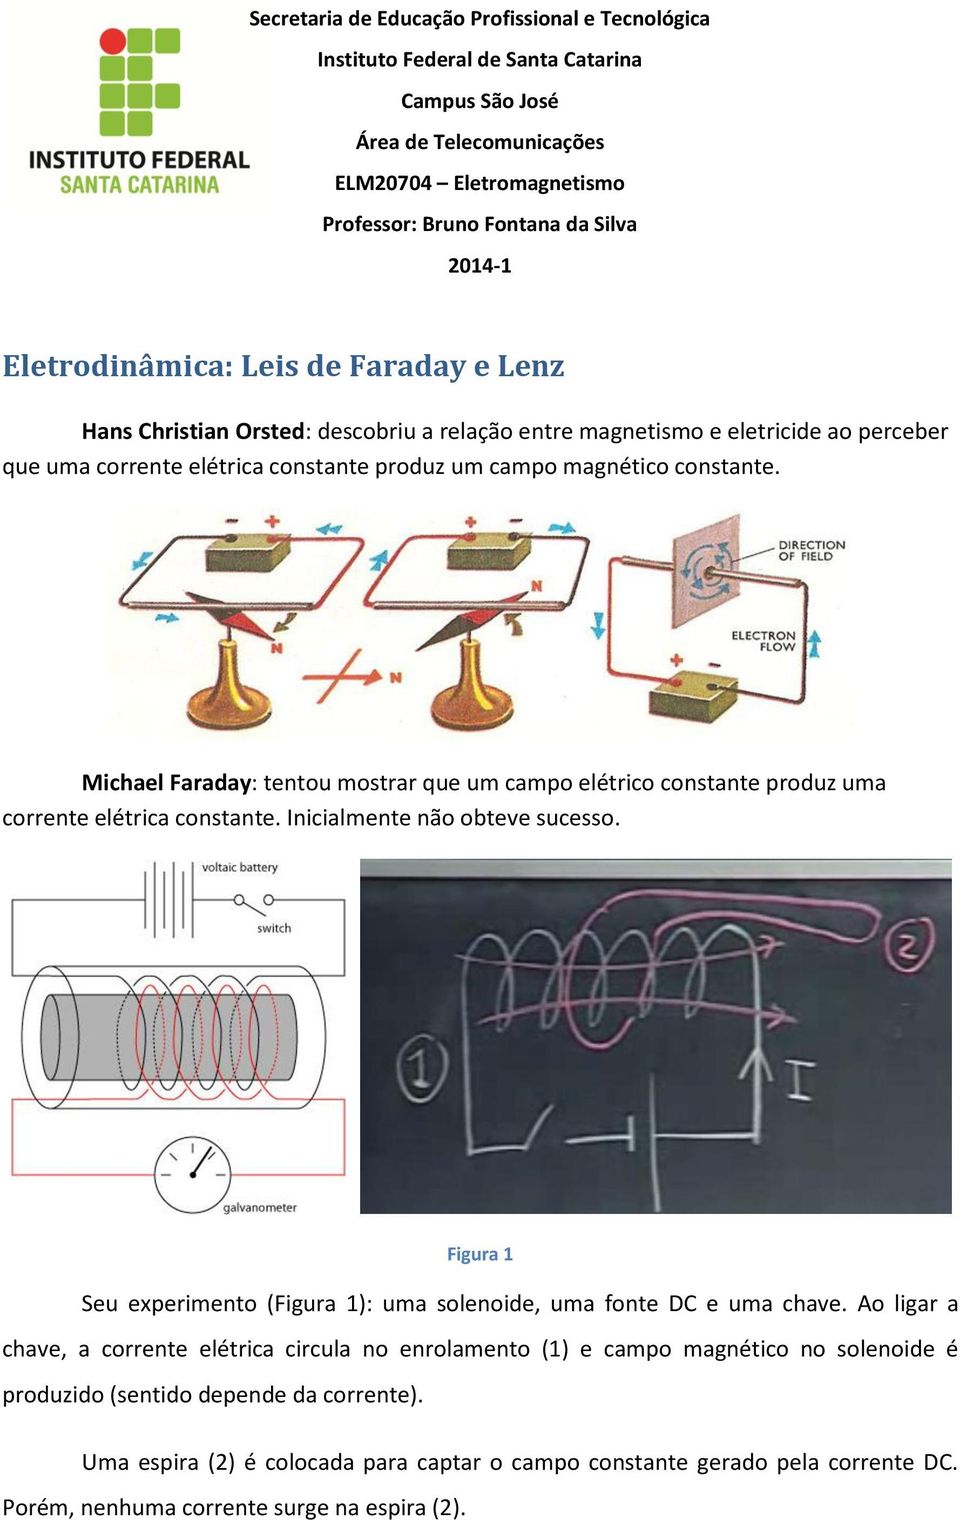 Michael Faraday: tentou mostrar que um campo elétrico constante produz uma corrente elétrica constante. Inicialmente não obteve sucesso.